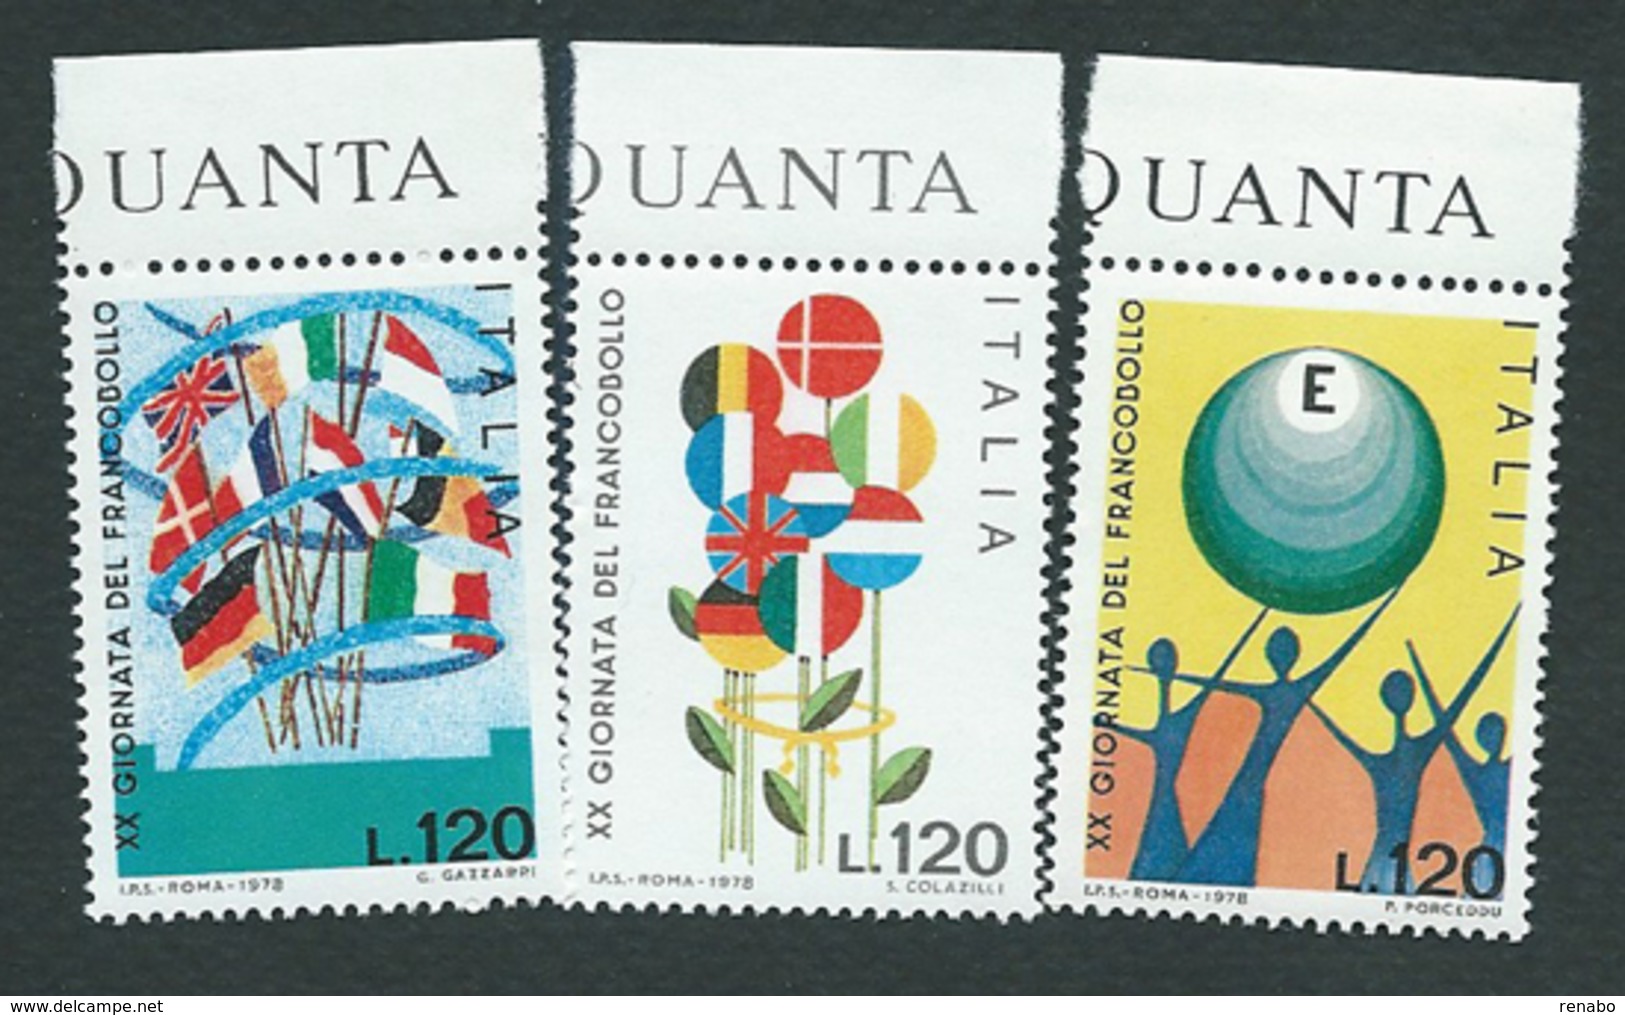 Italia, Italy 1978; Bandiere, Flags ; Disegni Di Bambini,  Drawings By Kids. Serie Completa Di Bordo Superiore. - Stamps